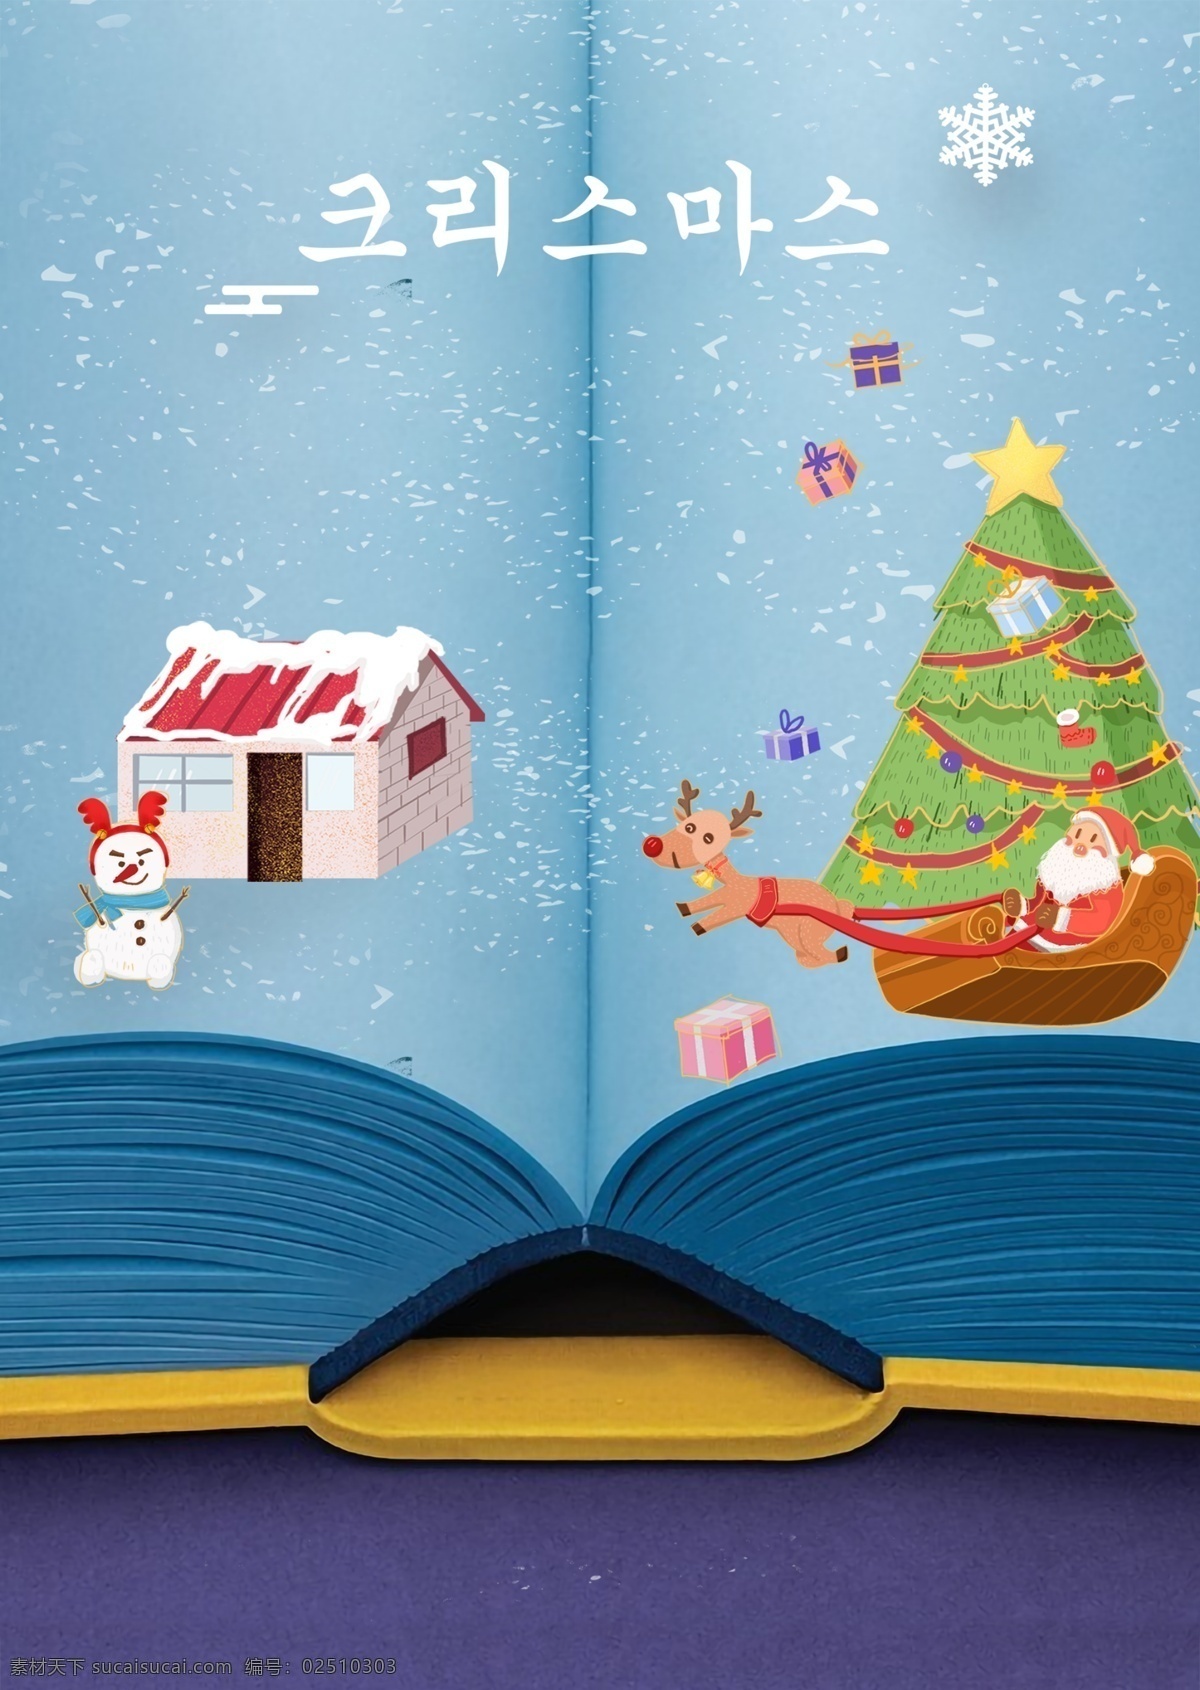 蓝色 纸板 圣诞节 海报 简短 说明 雪 雪人 插图 这本书 帽 圣诞 圣诞树 住房